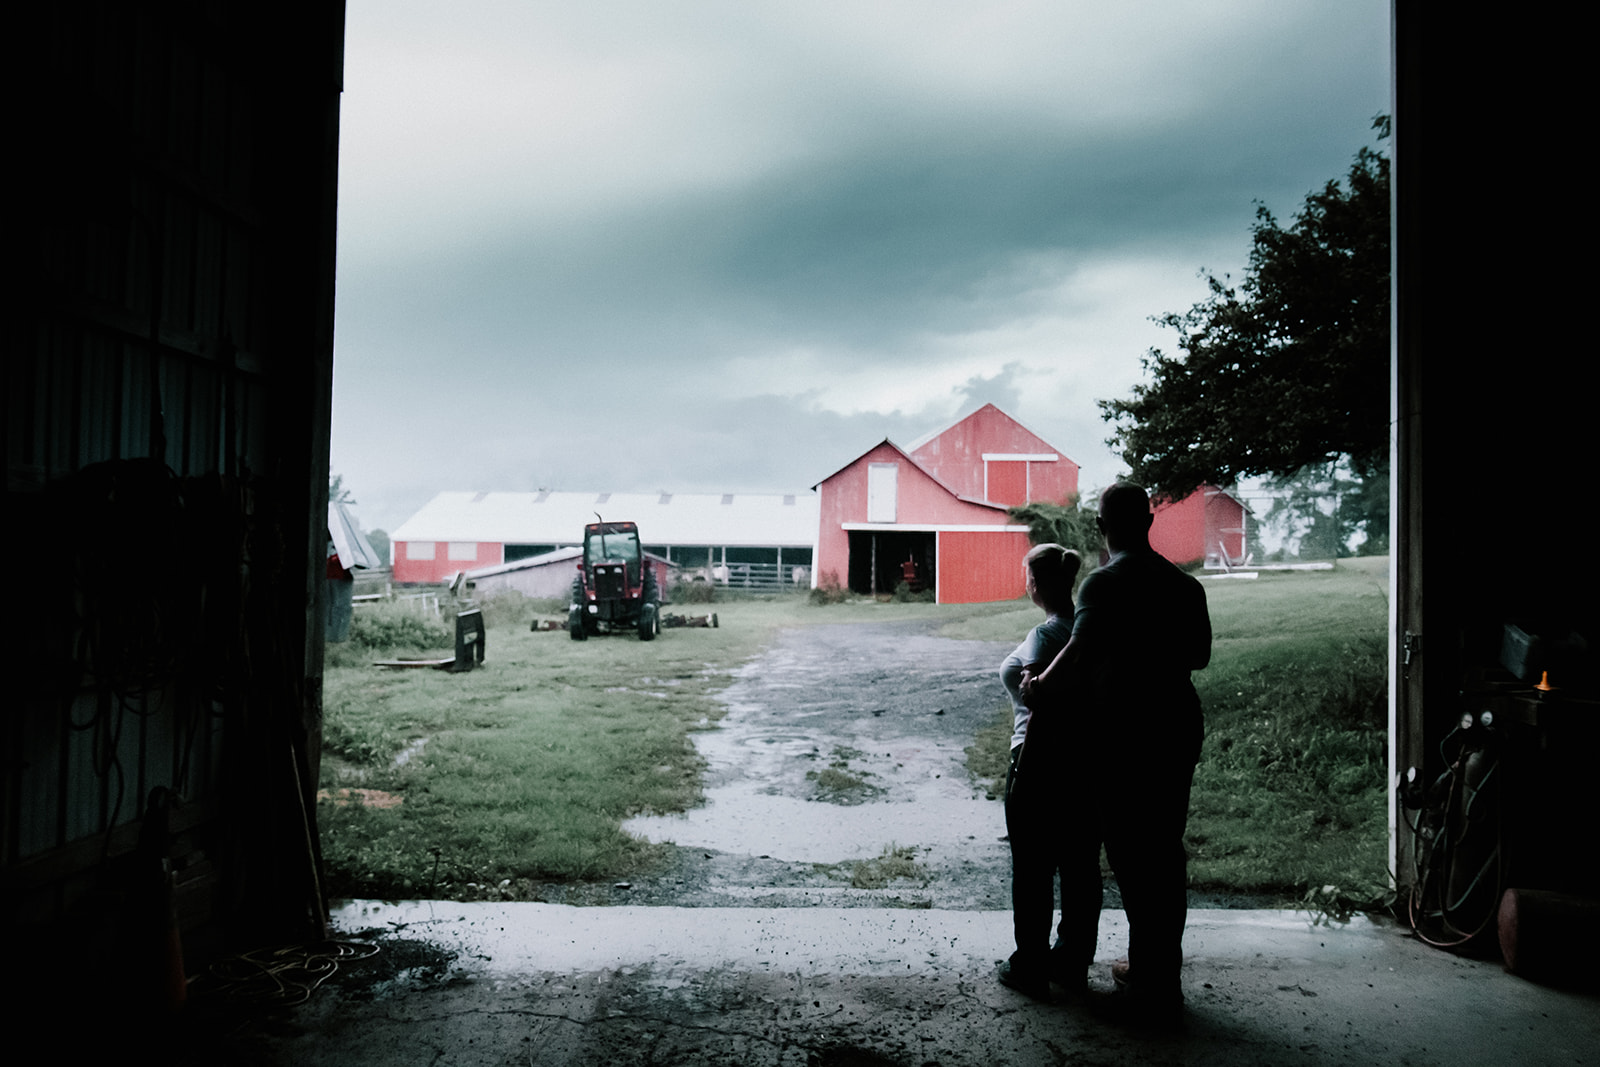 photos of a couple on a farm during a rain storm